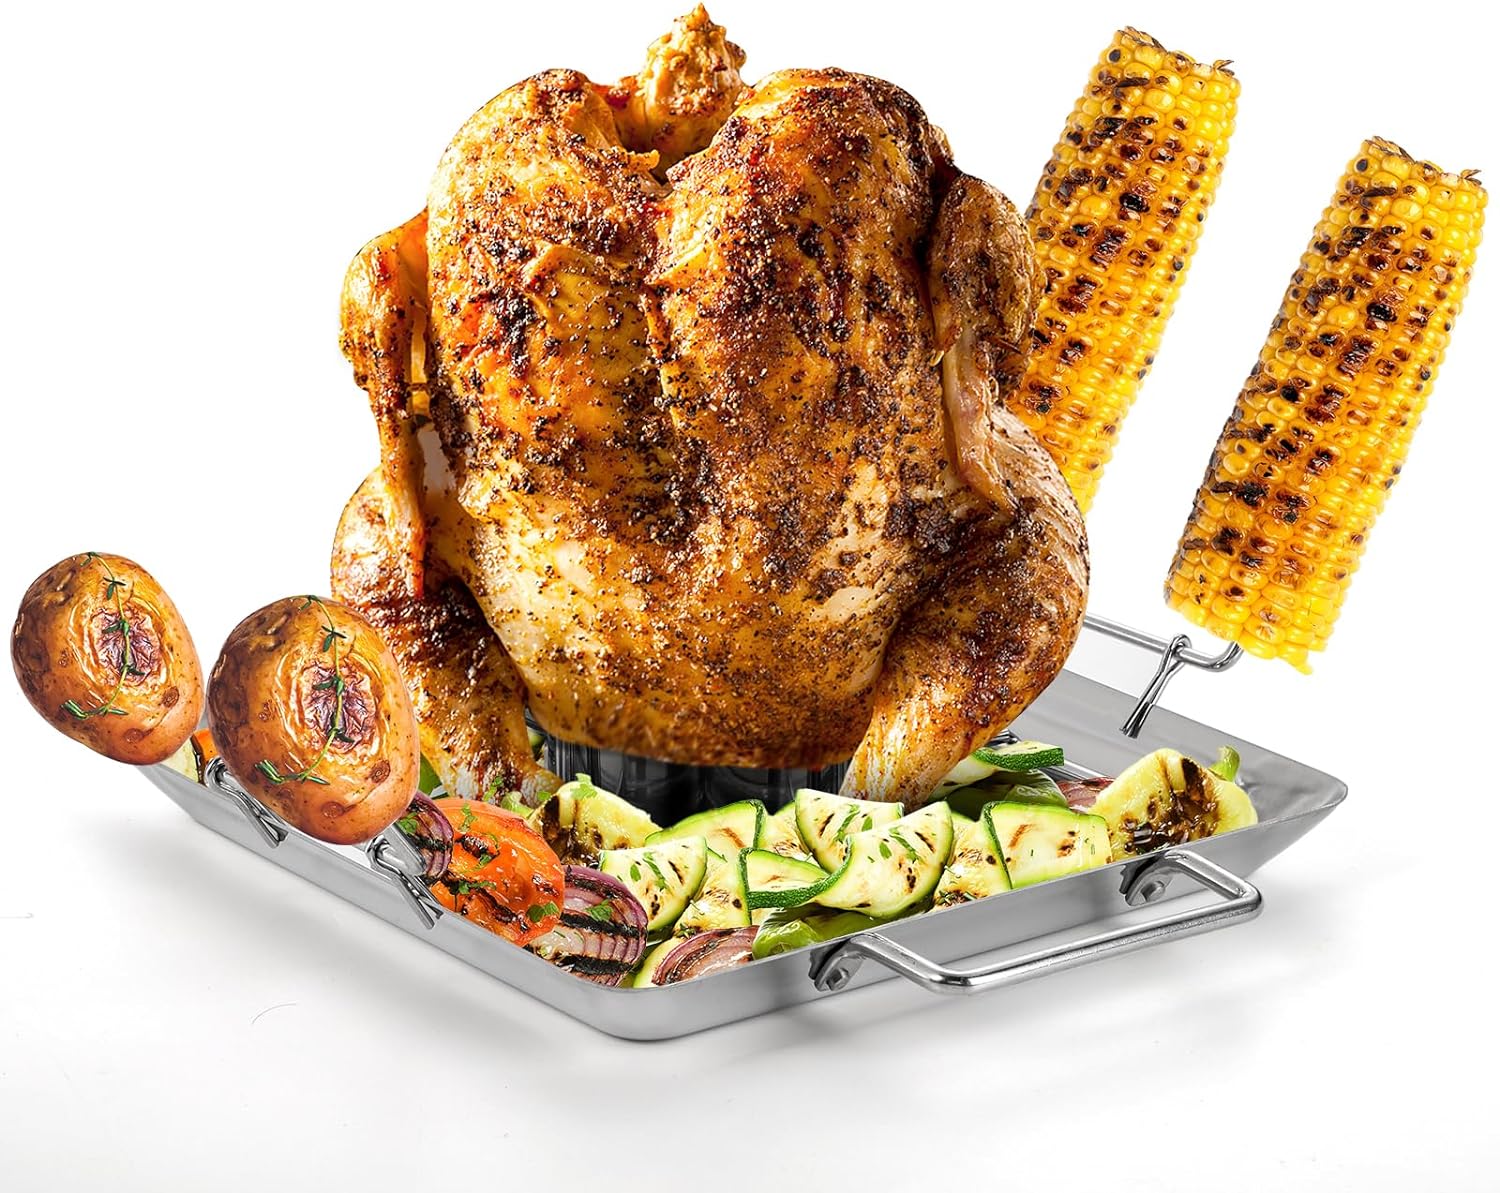 Stainless Steel Chicken Turkey Roaster Oven Bbq Grill Rack Stand Holder Tray  Turkey Chicken Roaster Rack